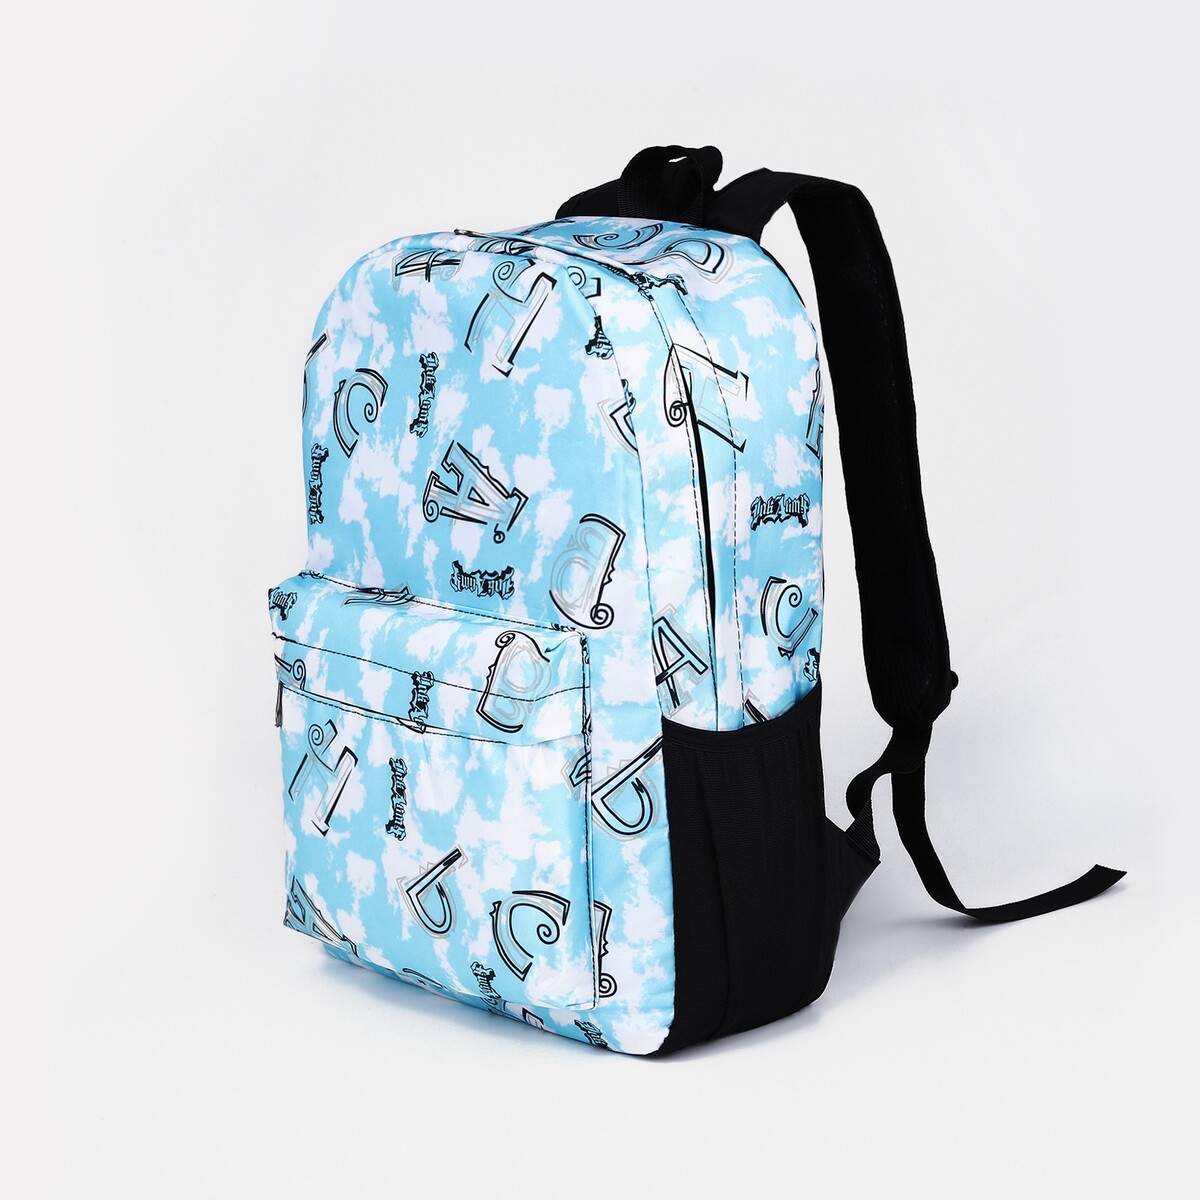 Рюкзак молодежный из текстиля на молнии, 3 кармана, цвет голубой